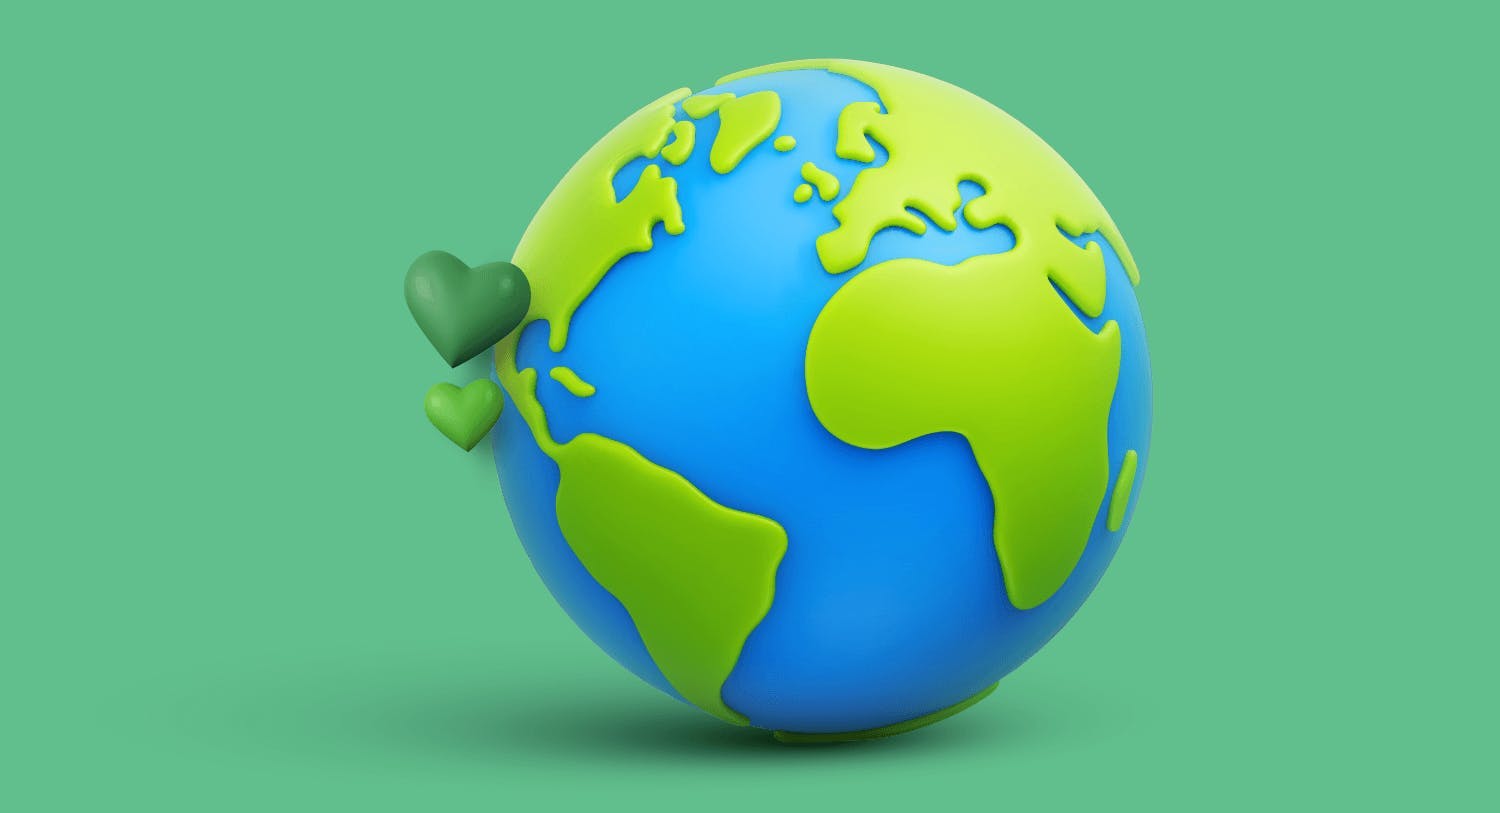 Une planète d'un bleu et vert vif, avec des petits coeurs vert inspirant le respect de l'environnement